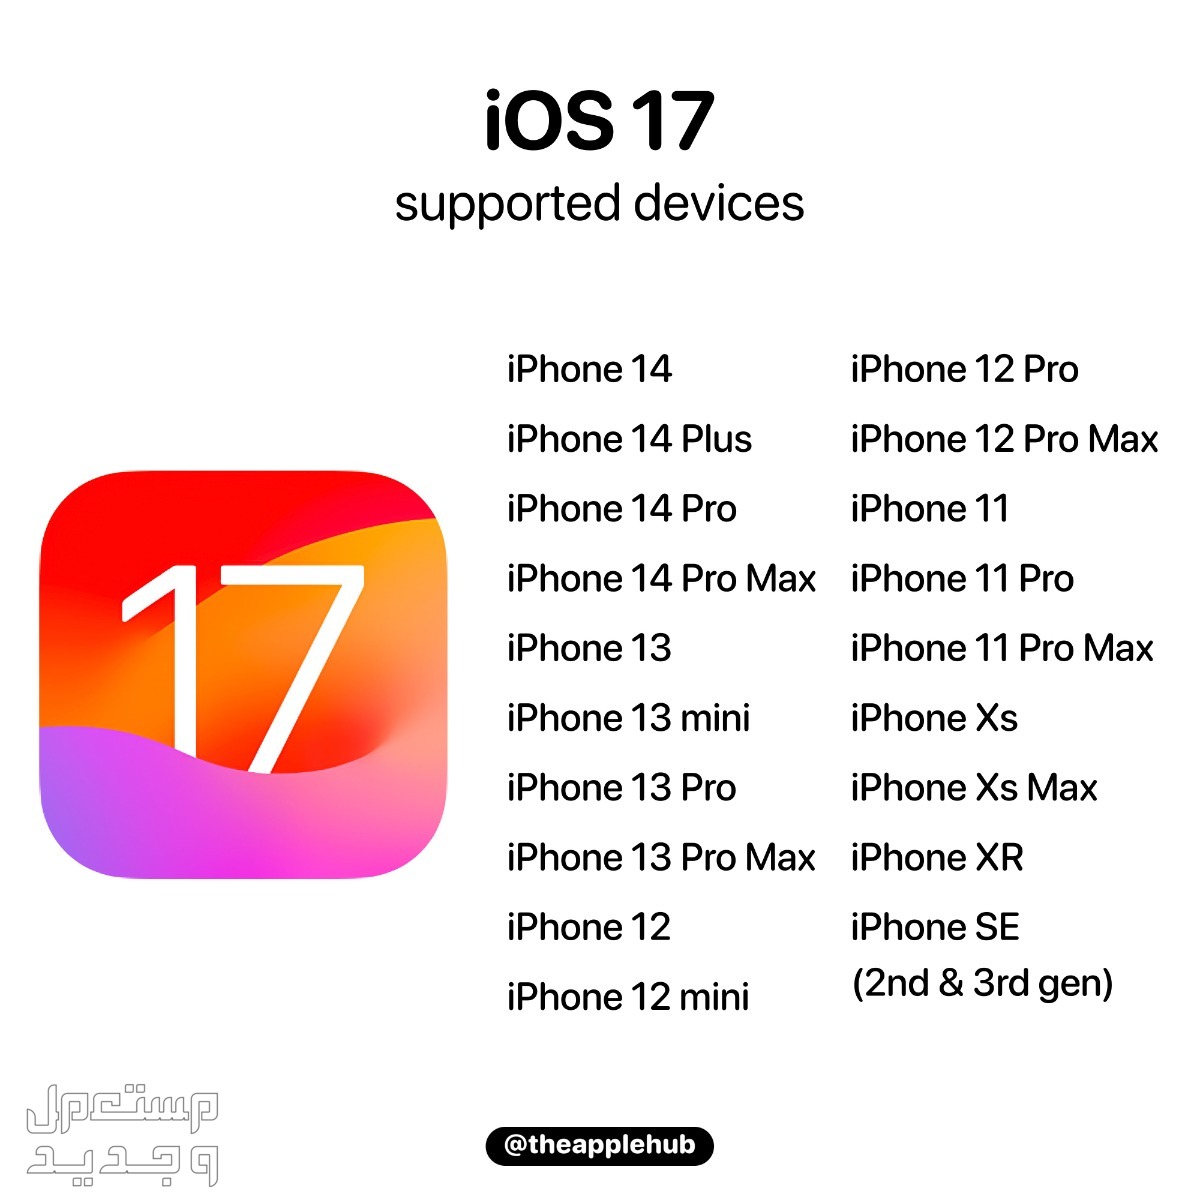 نظام iOS 17 لهواتف ايفون بمميزات جديدة تعرف عليها في عمان